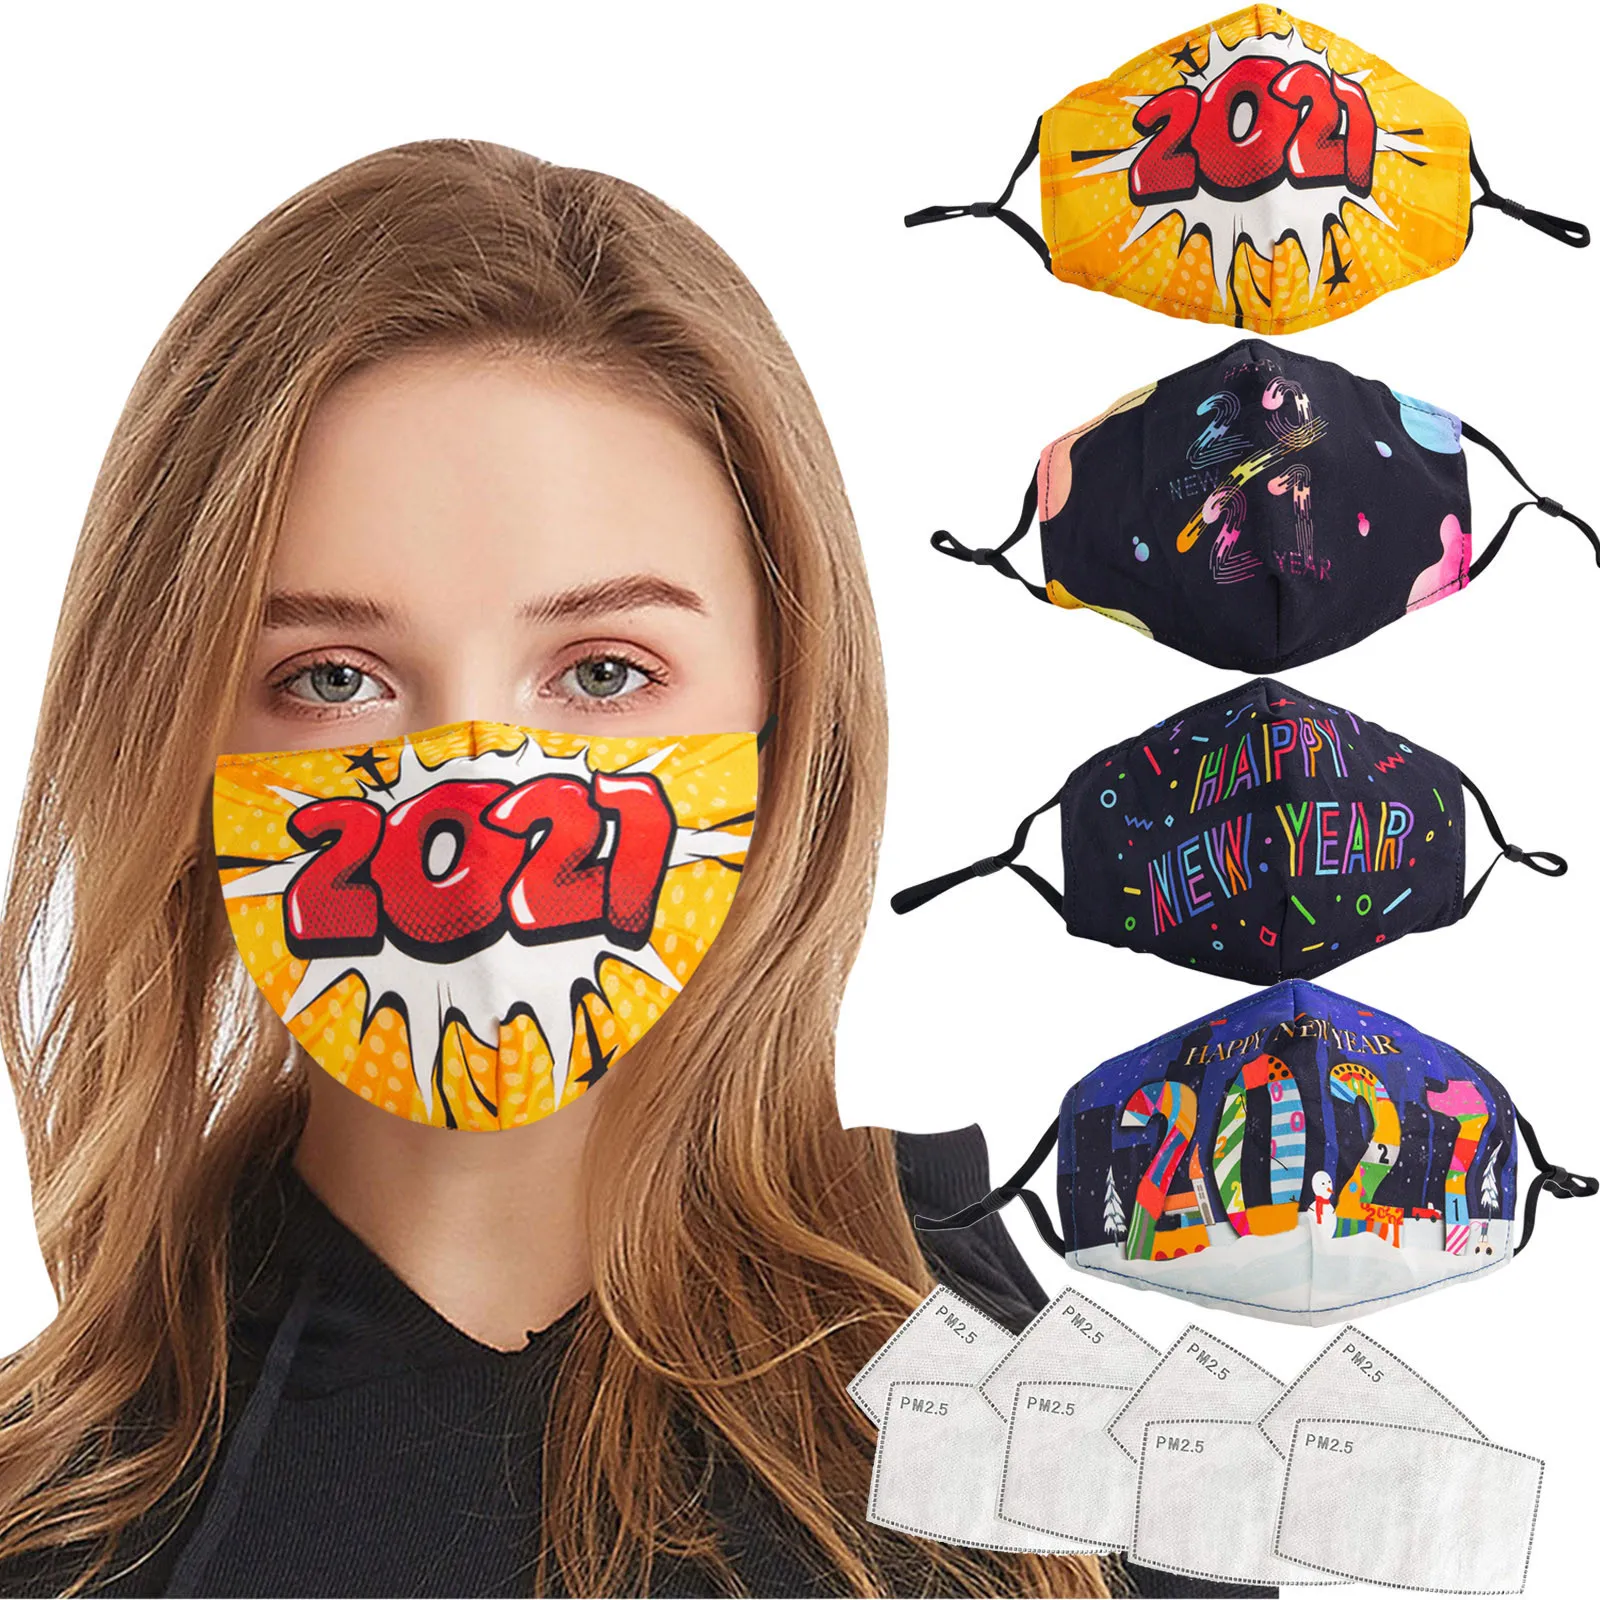 

4PCS Adult 2021 Print Cotton Mask Adjustable Washable Dustproof Safet Protect Haze Face Masks mascarillas masque + 8PCS Filters